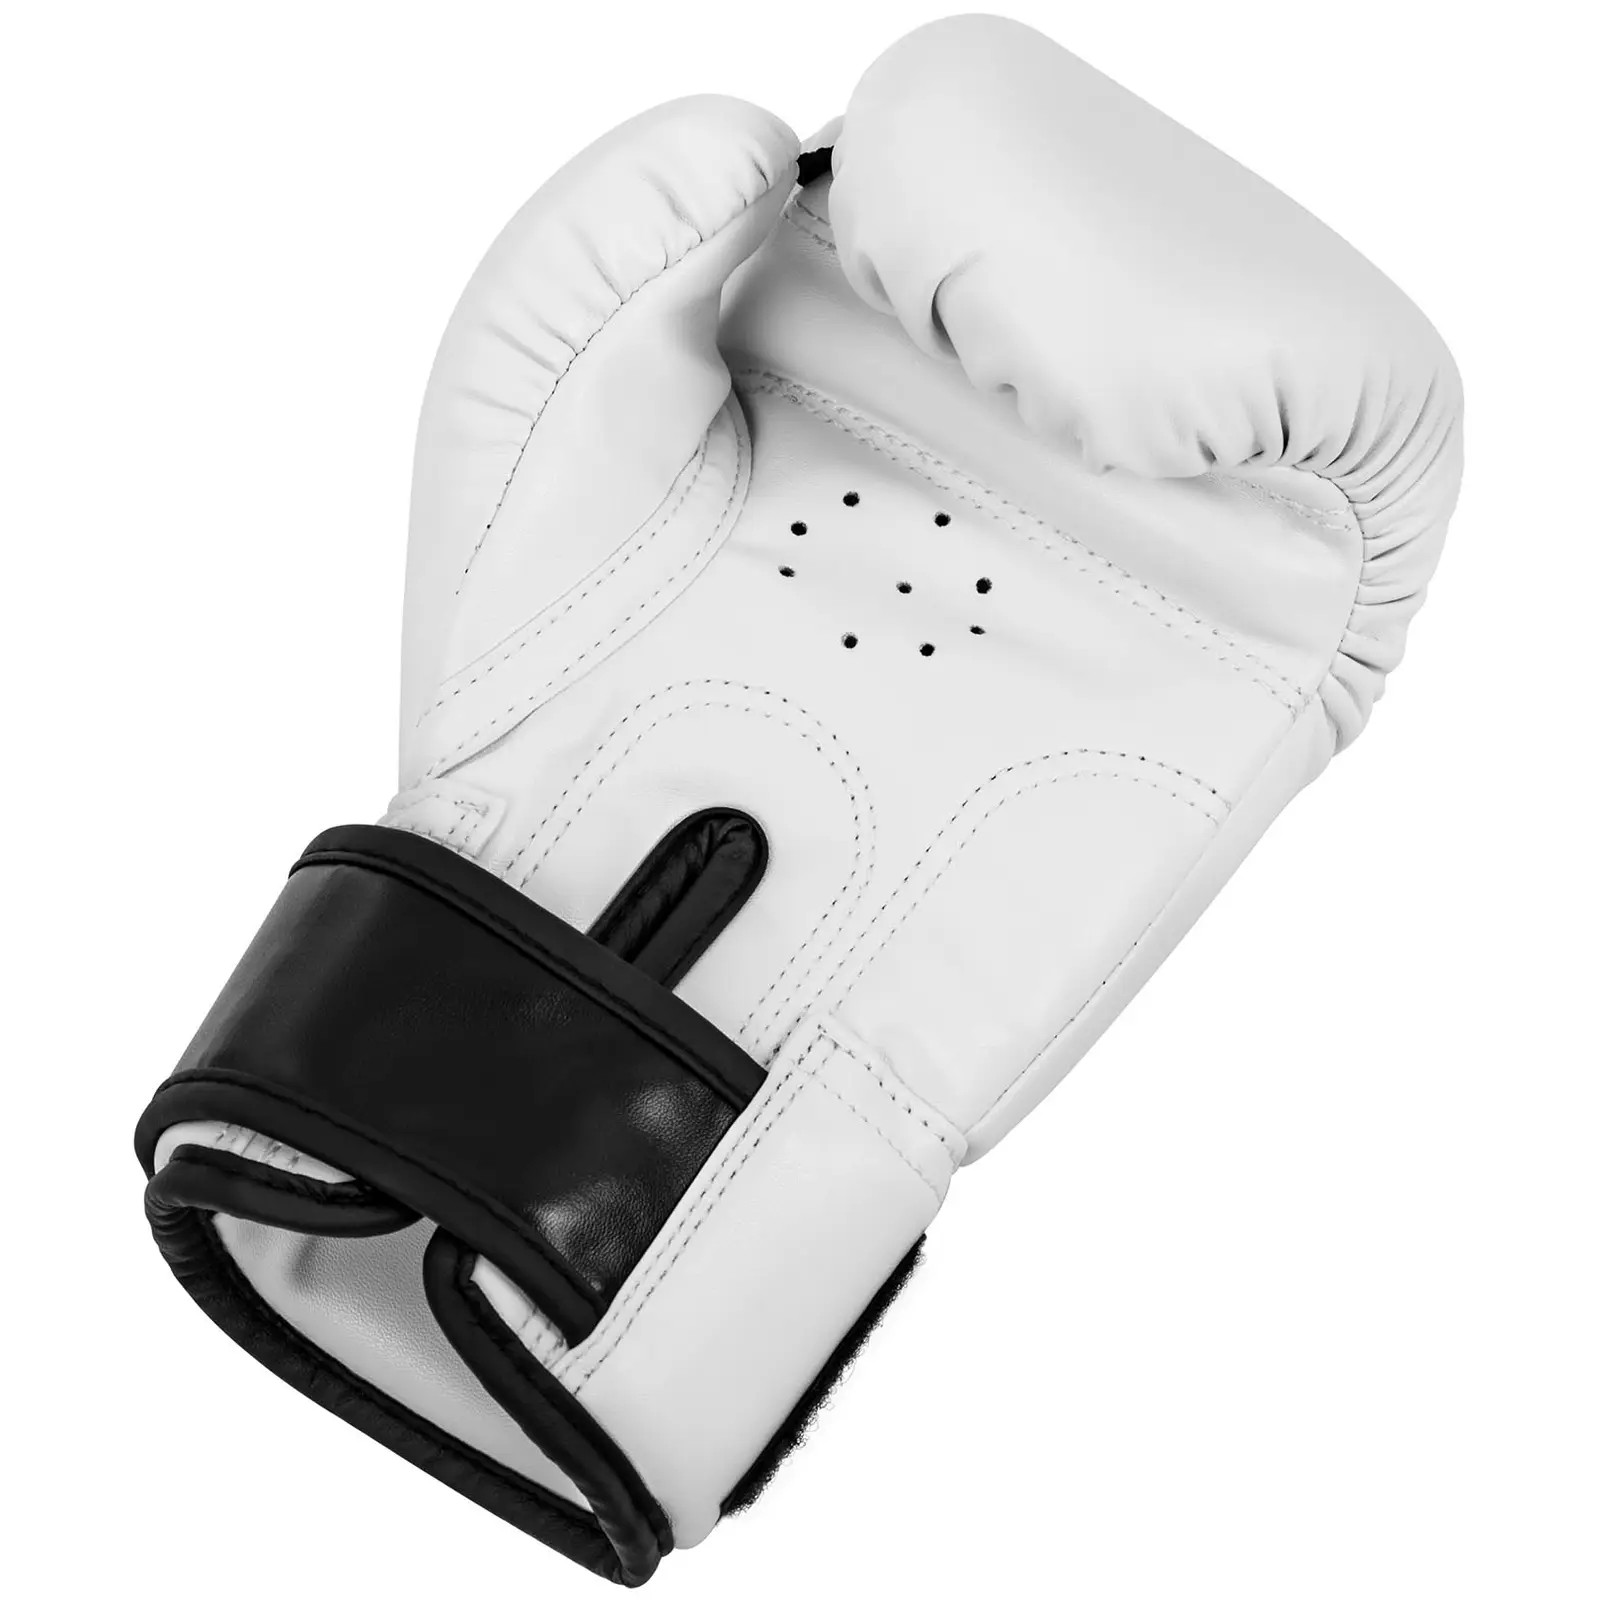 Dětské boxerské rukavice - 4 oz - bílé